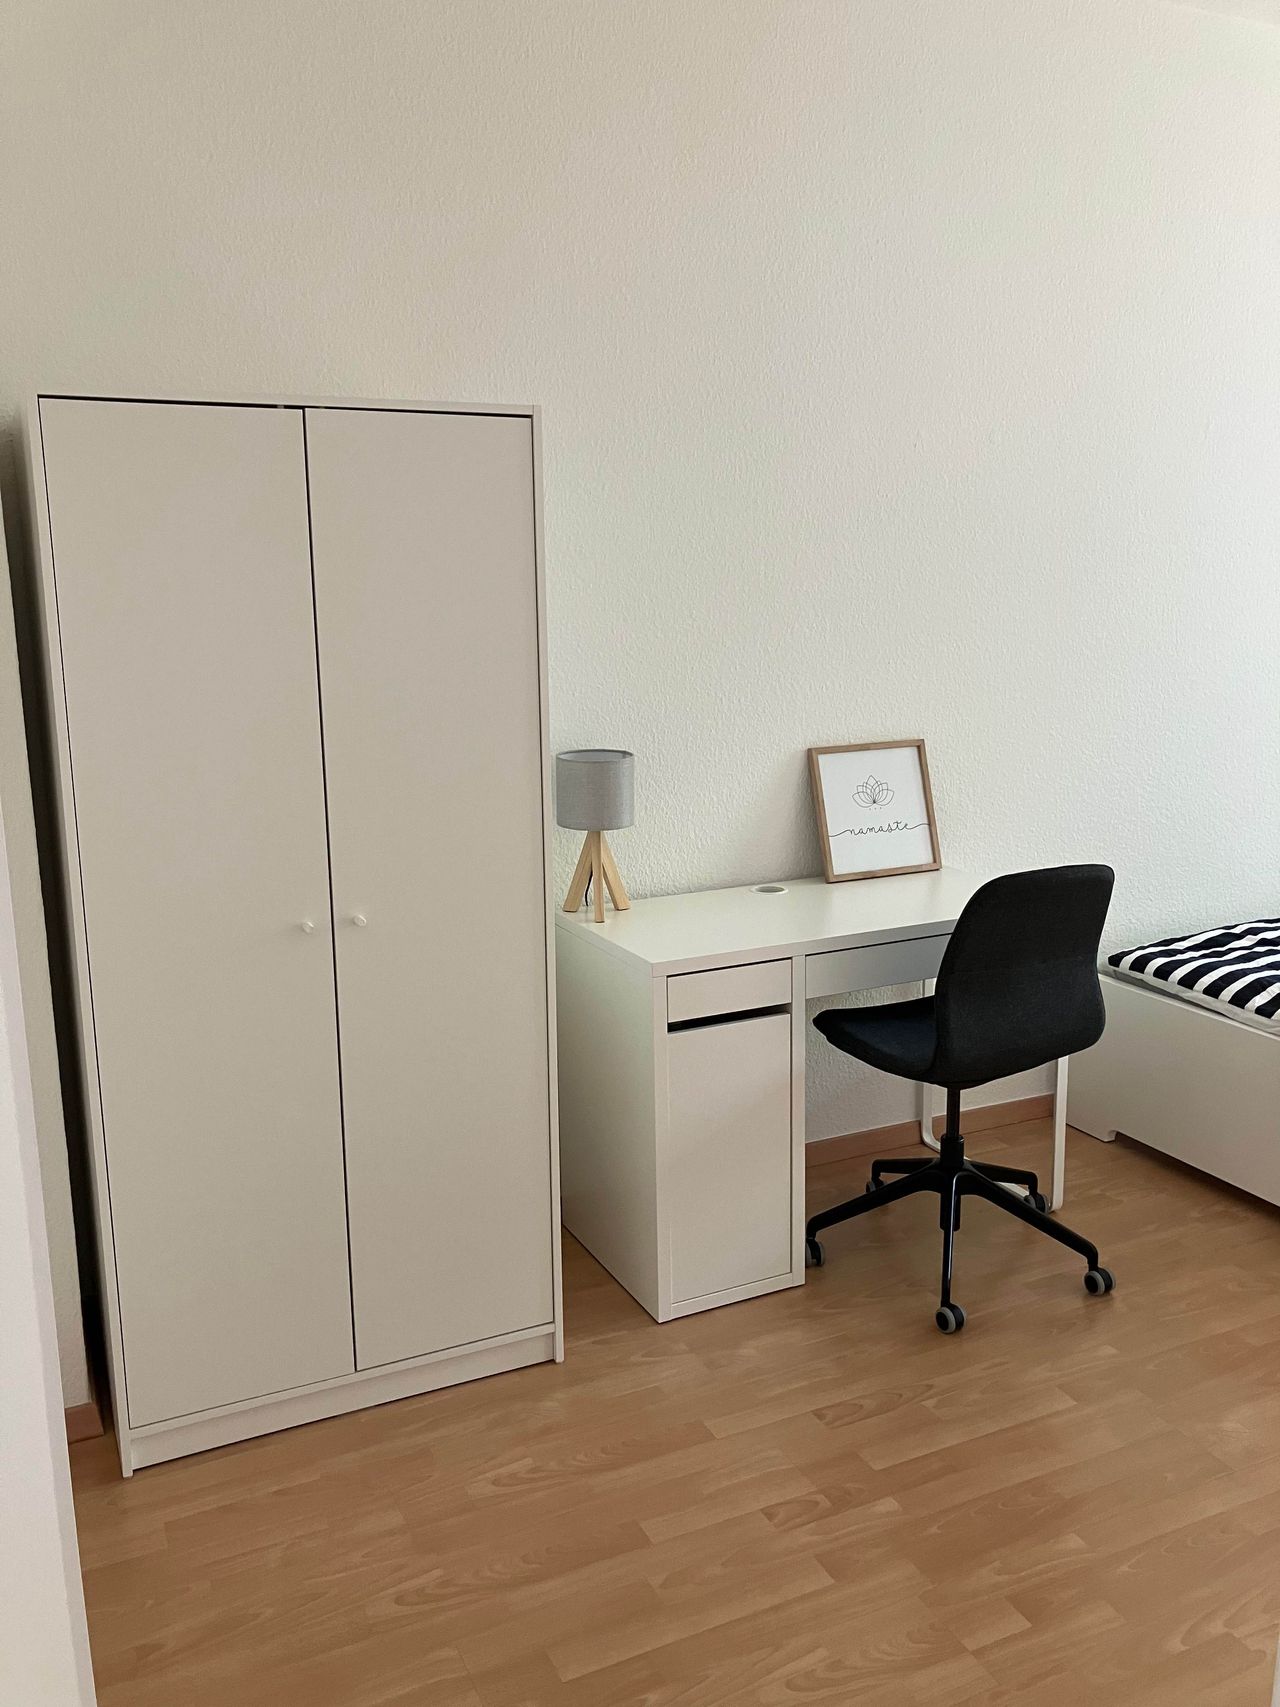 Wonderful 2 bed room suite in Leipzig